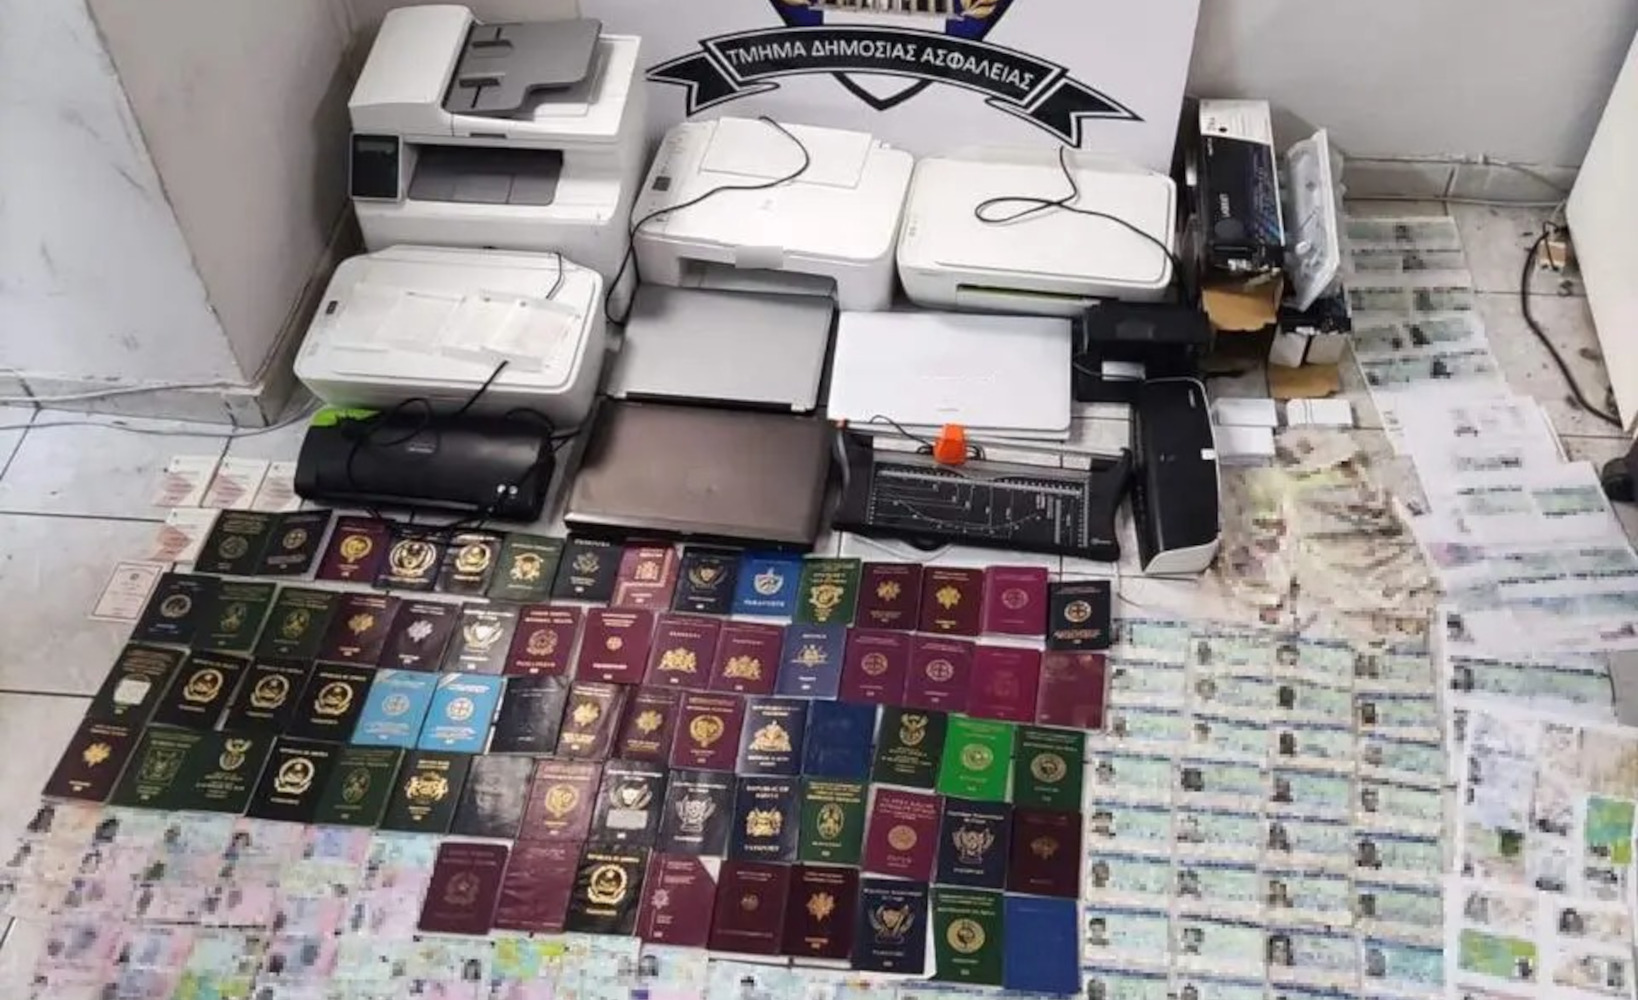 Κυψέλη: Βρέθηκε εργαστήριο πλαστών εγγράφων – Δεκάδες ταυτότητες, διαβατήρια, διπλώματα οδήγησης